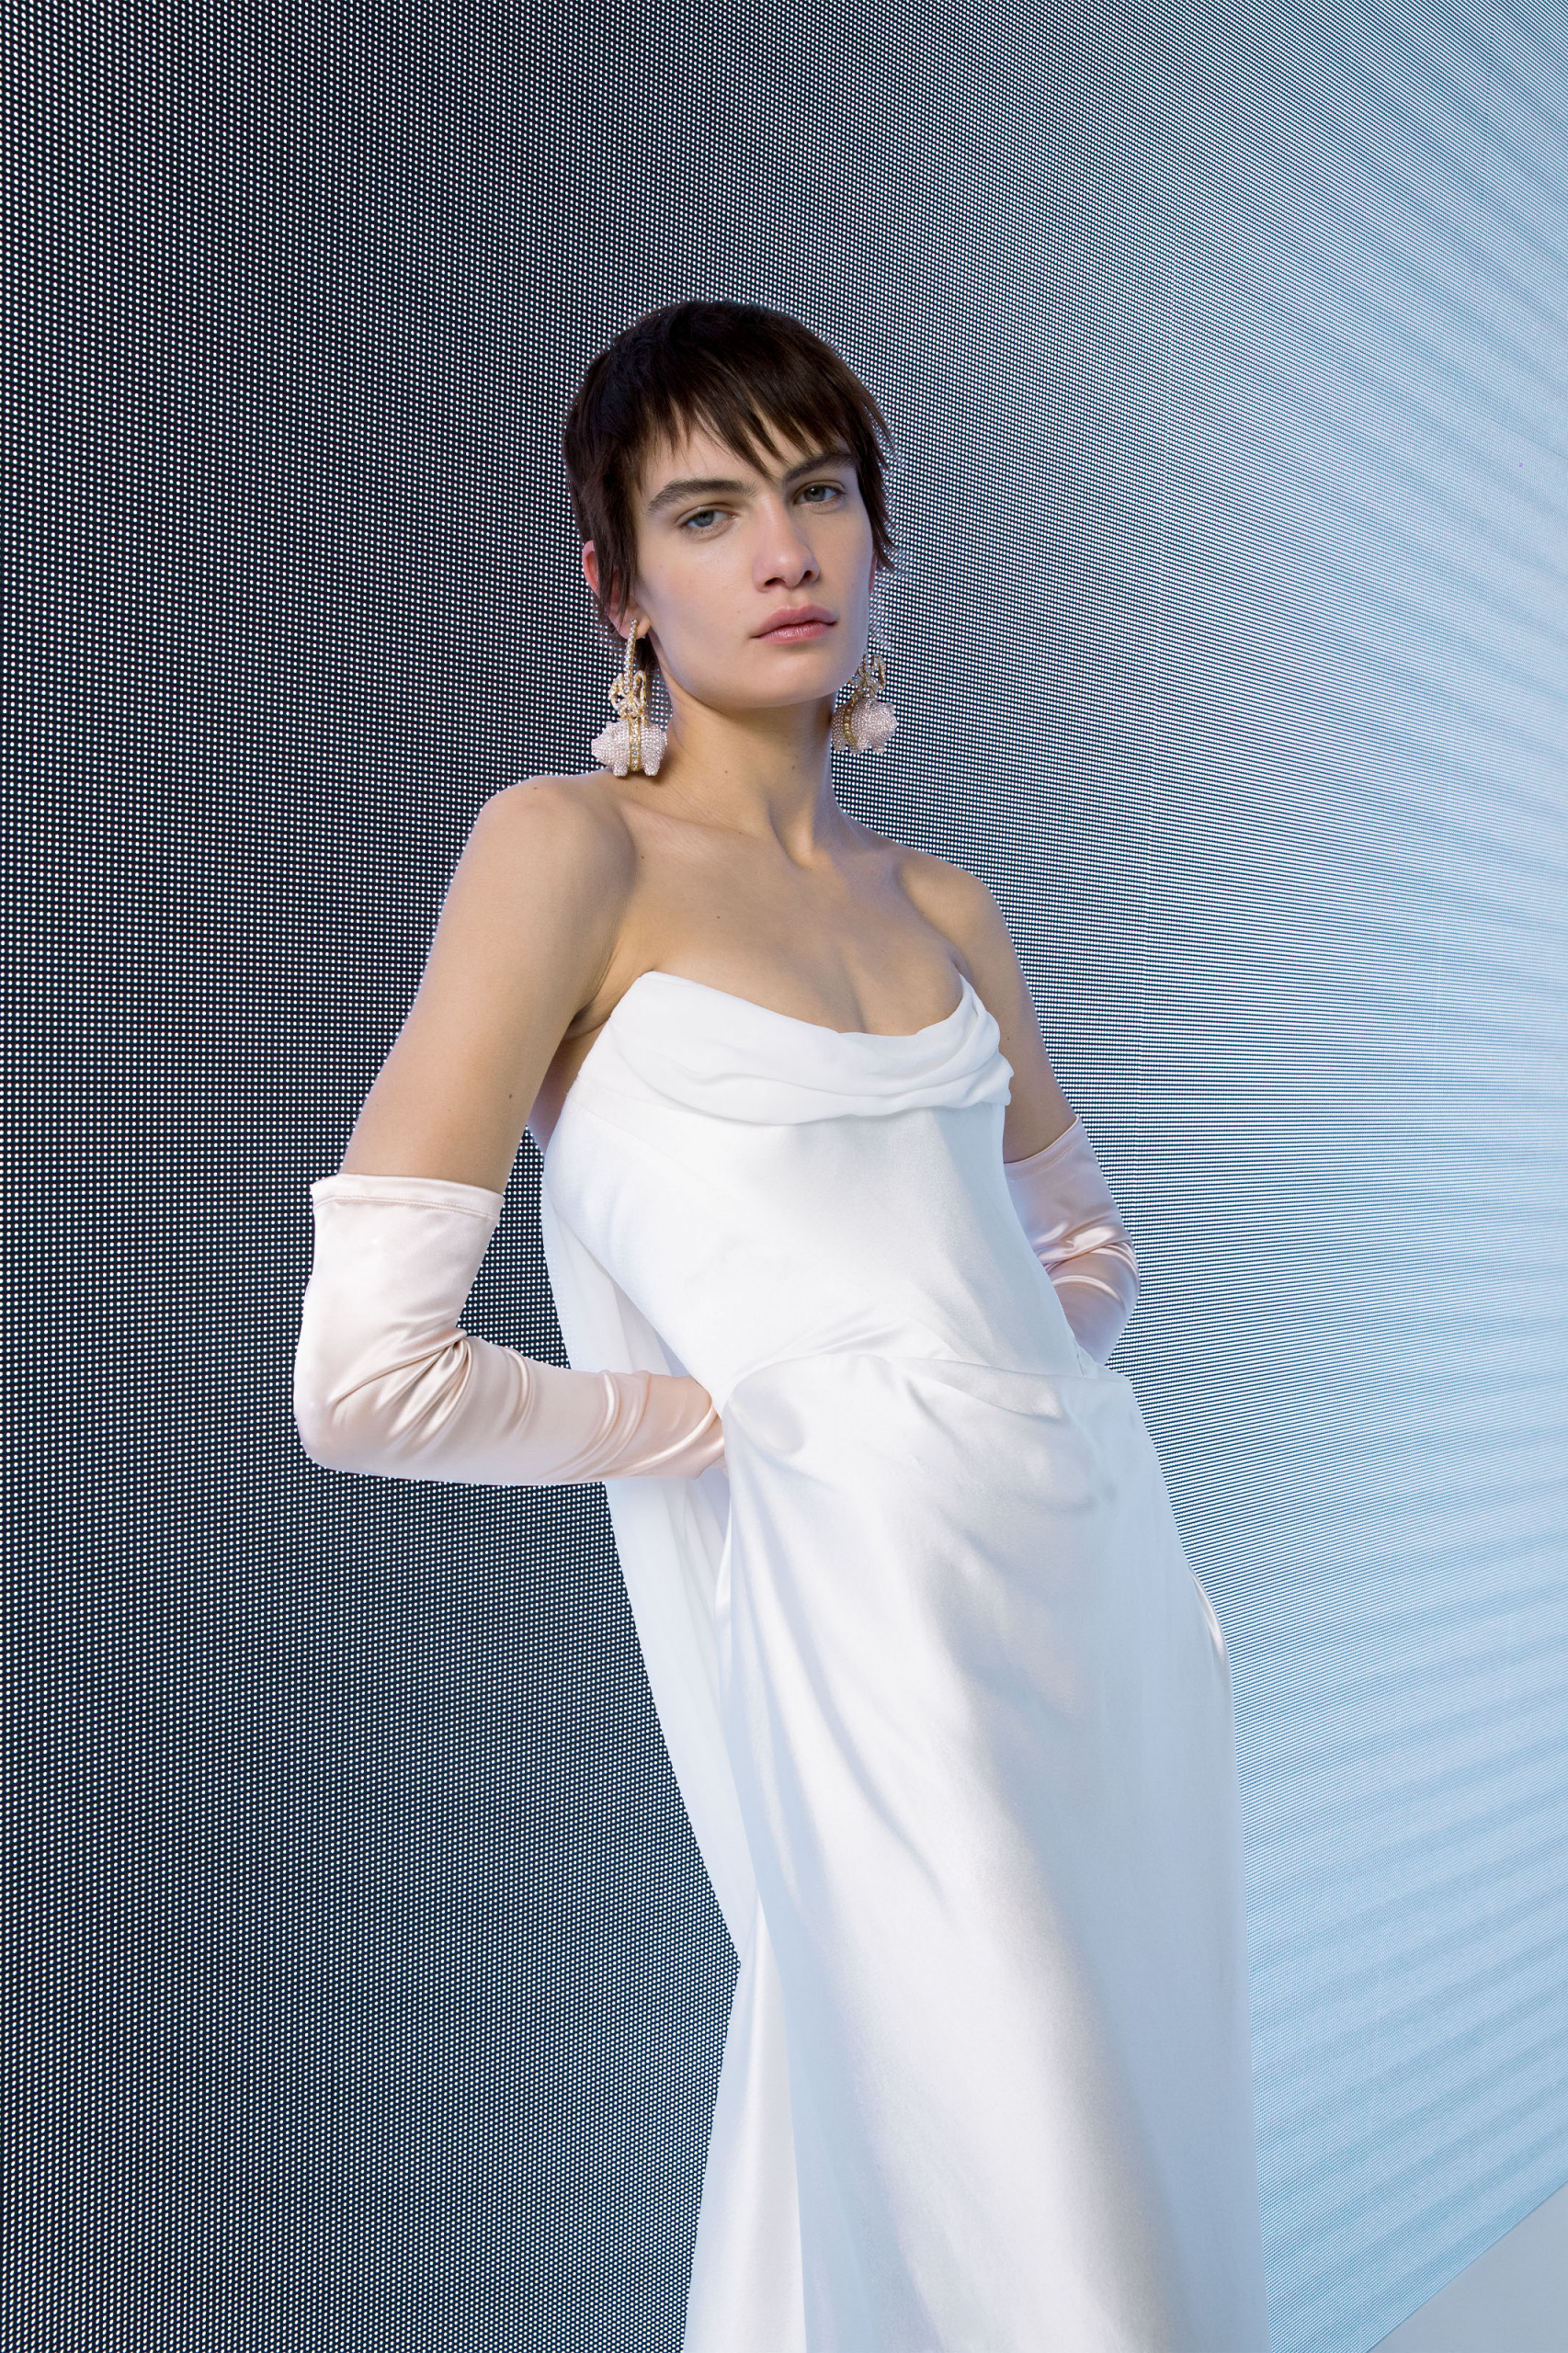 Vivienne Westwood Comet Wedding Dress - Browns Bride